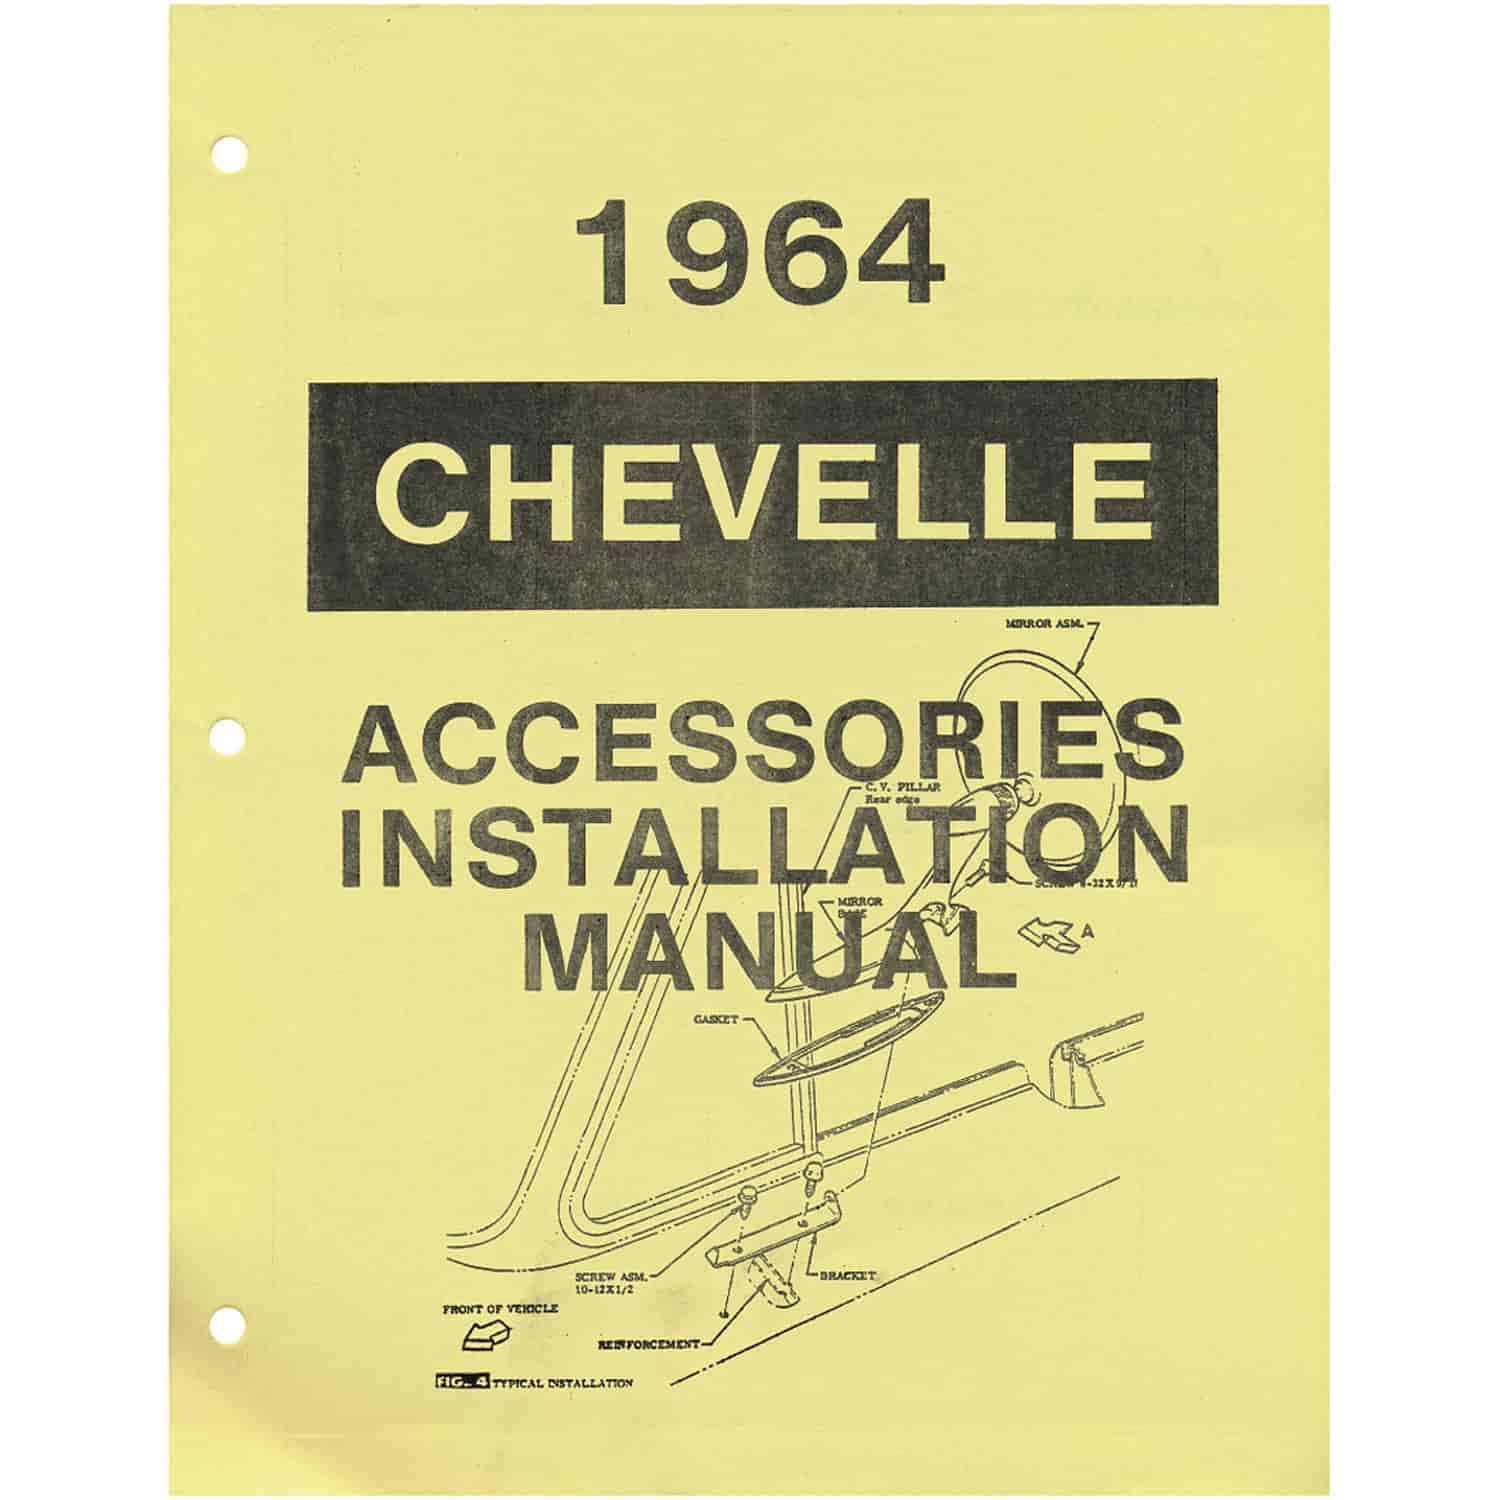 Manual Accessory Installation 1964 Chevelle/El Camino